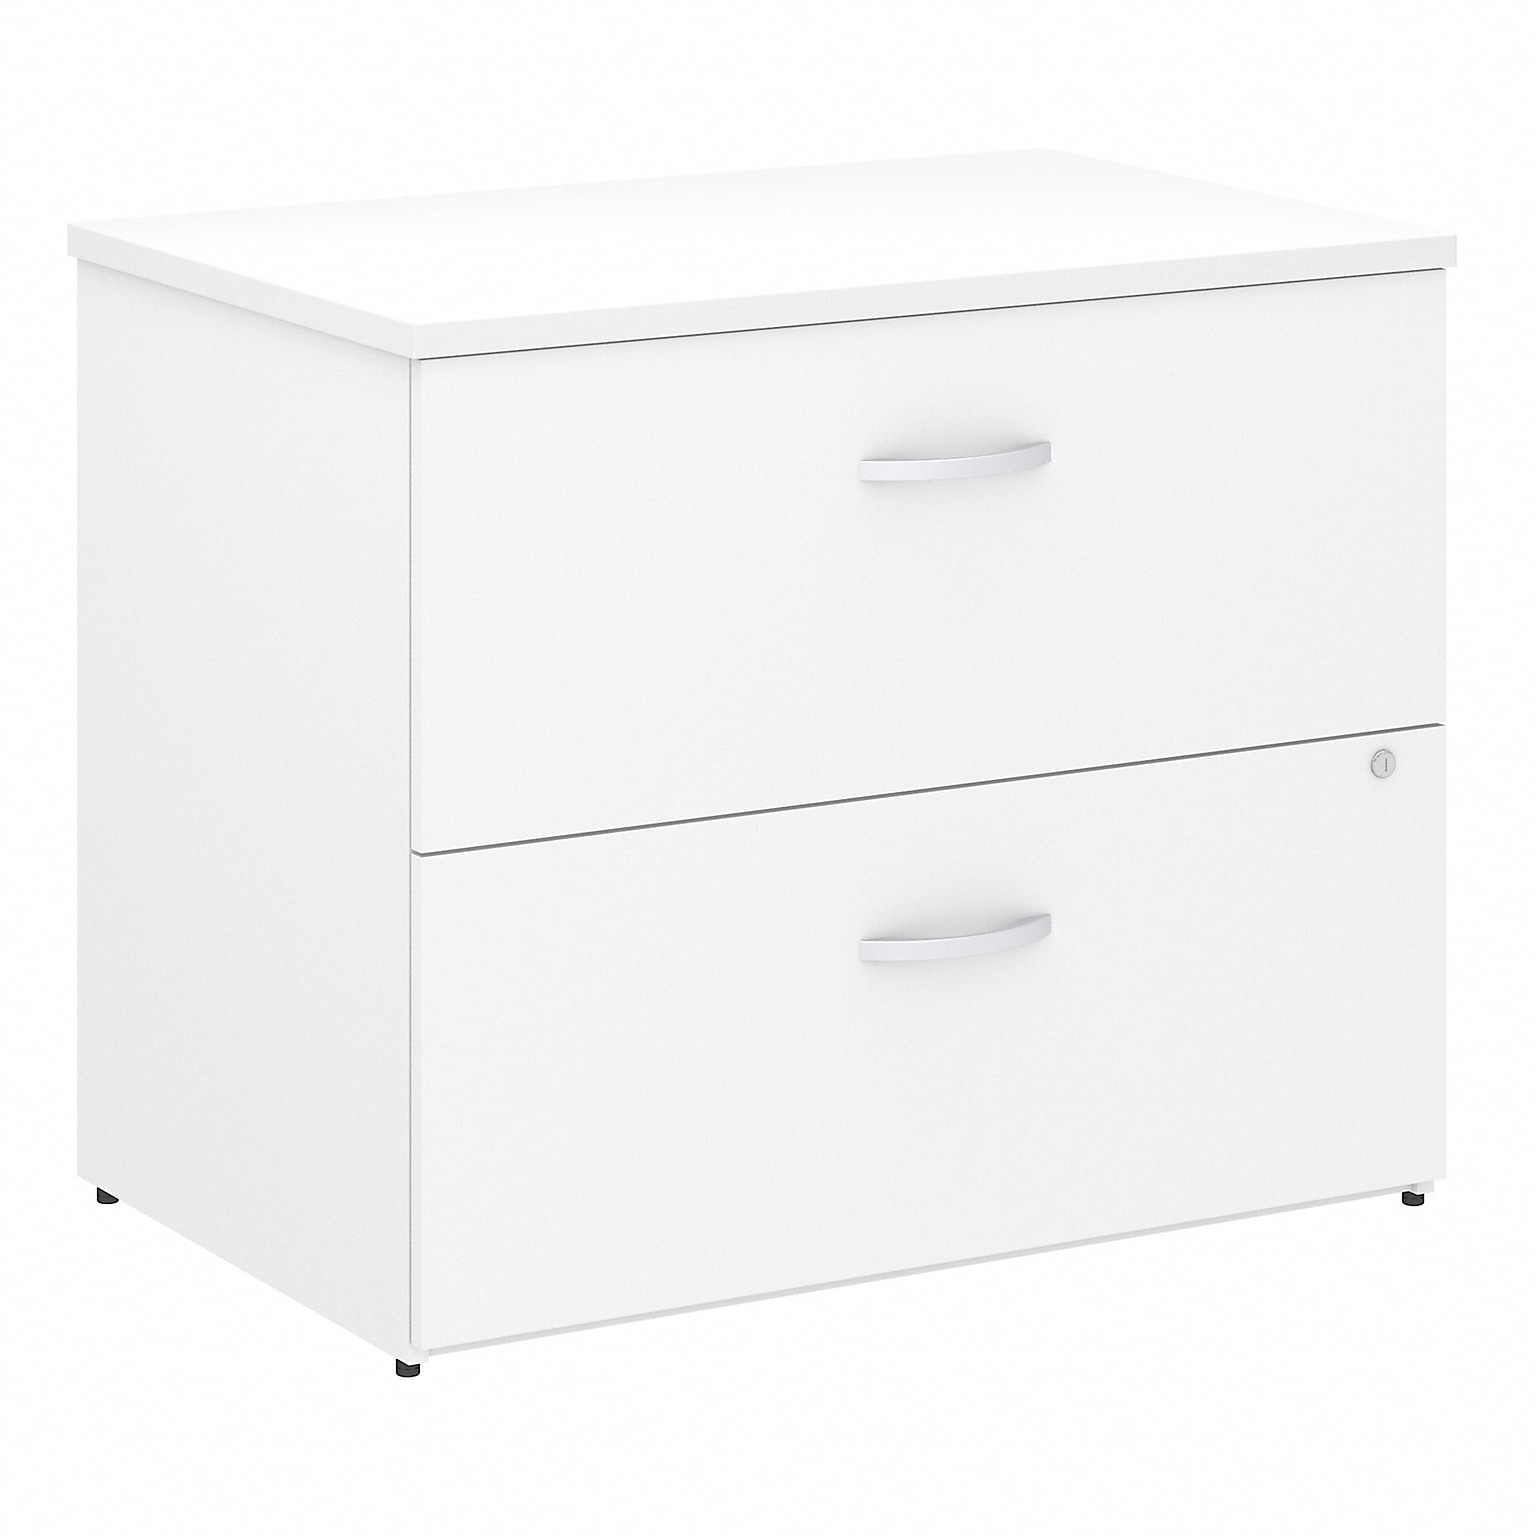 Bush Business Furniture Studio C Lateral File Cabinet, White (SCF136WHSU)